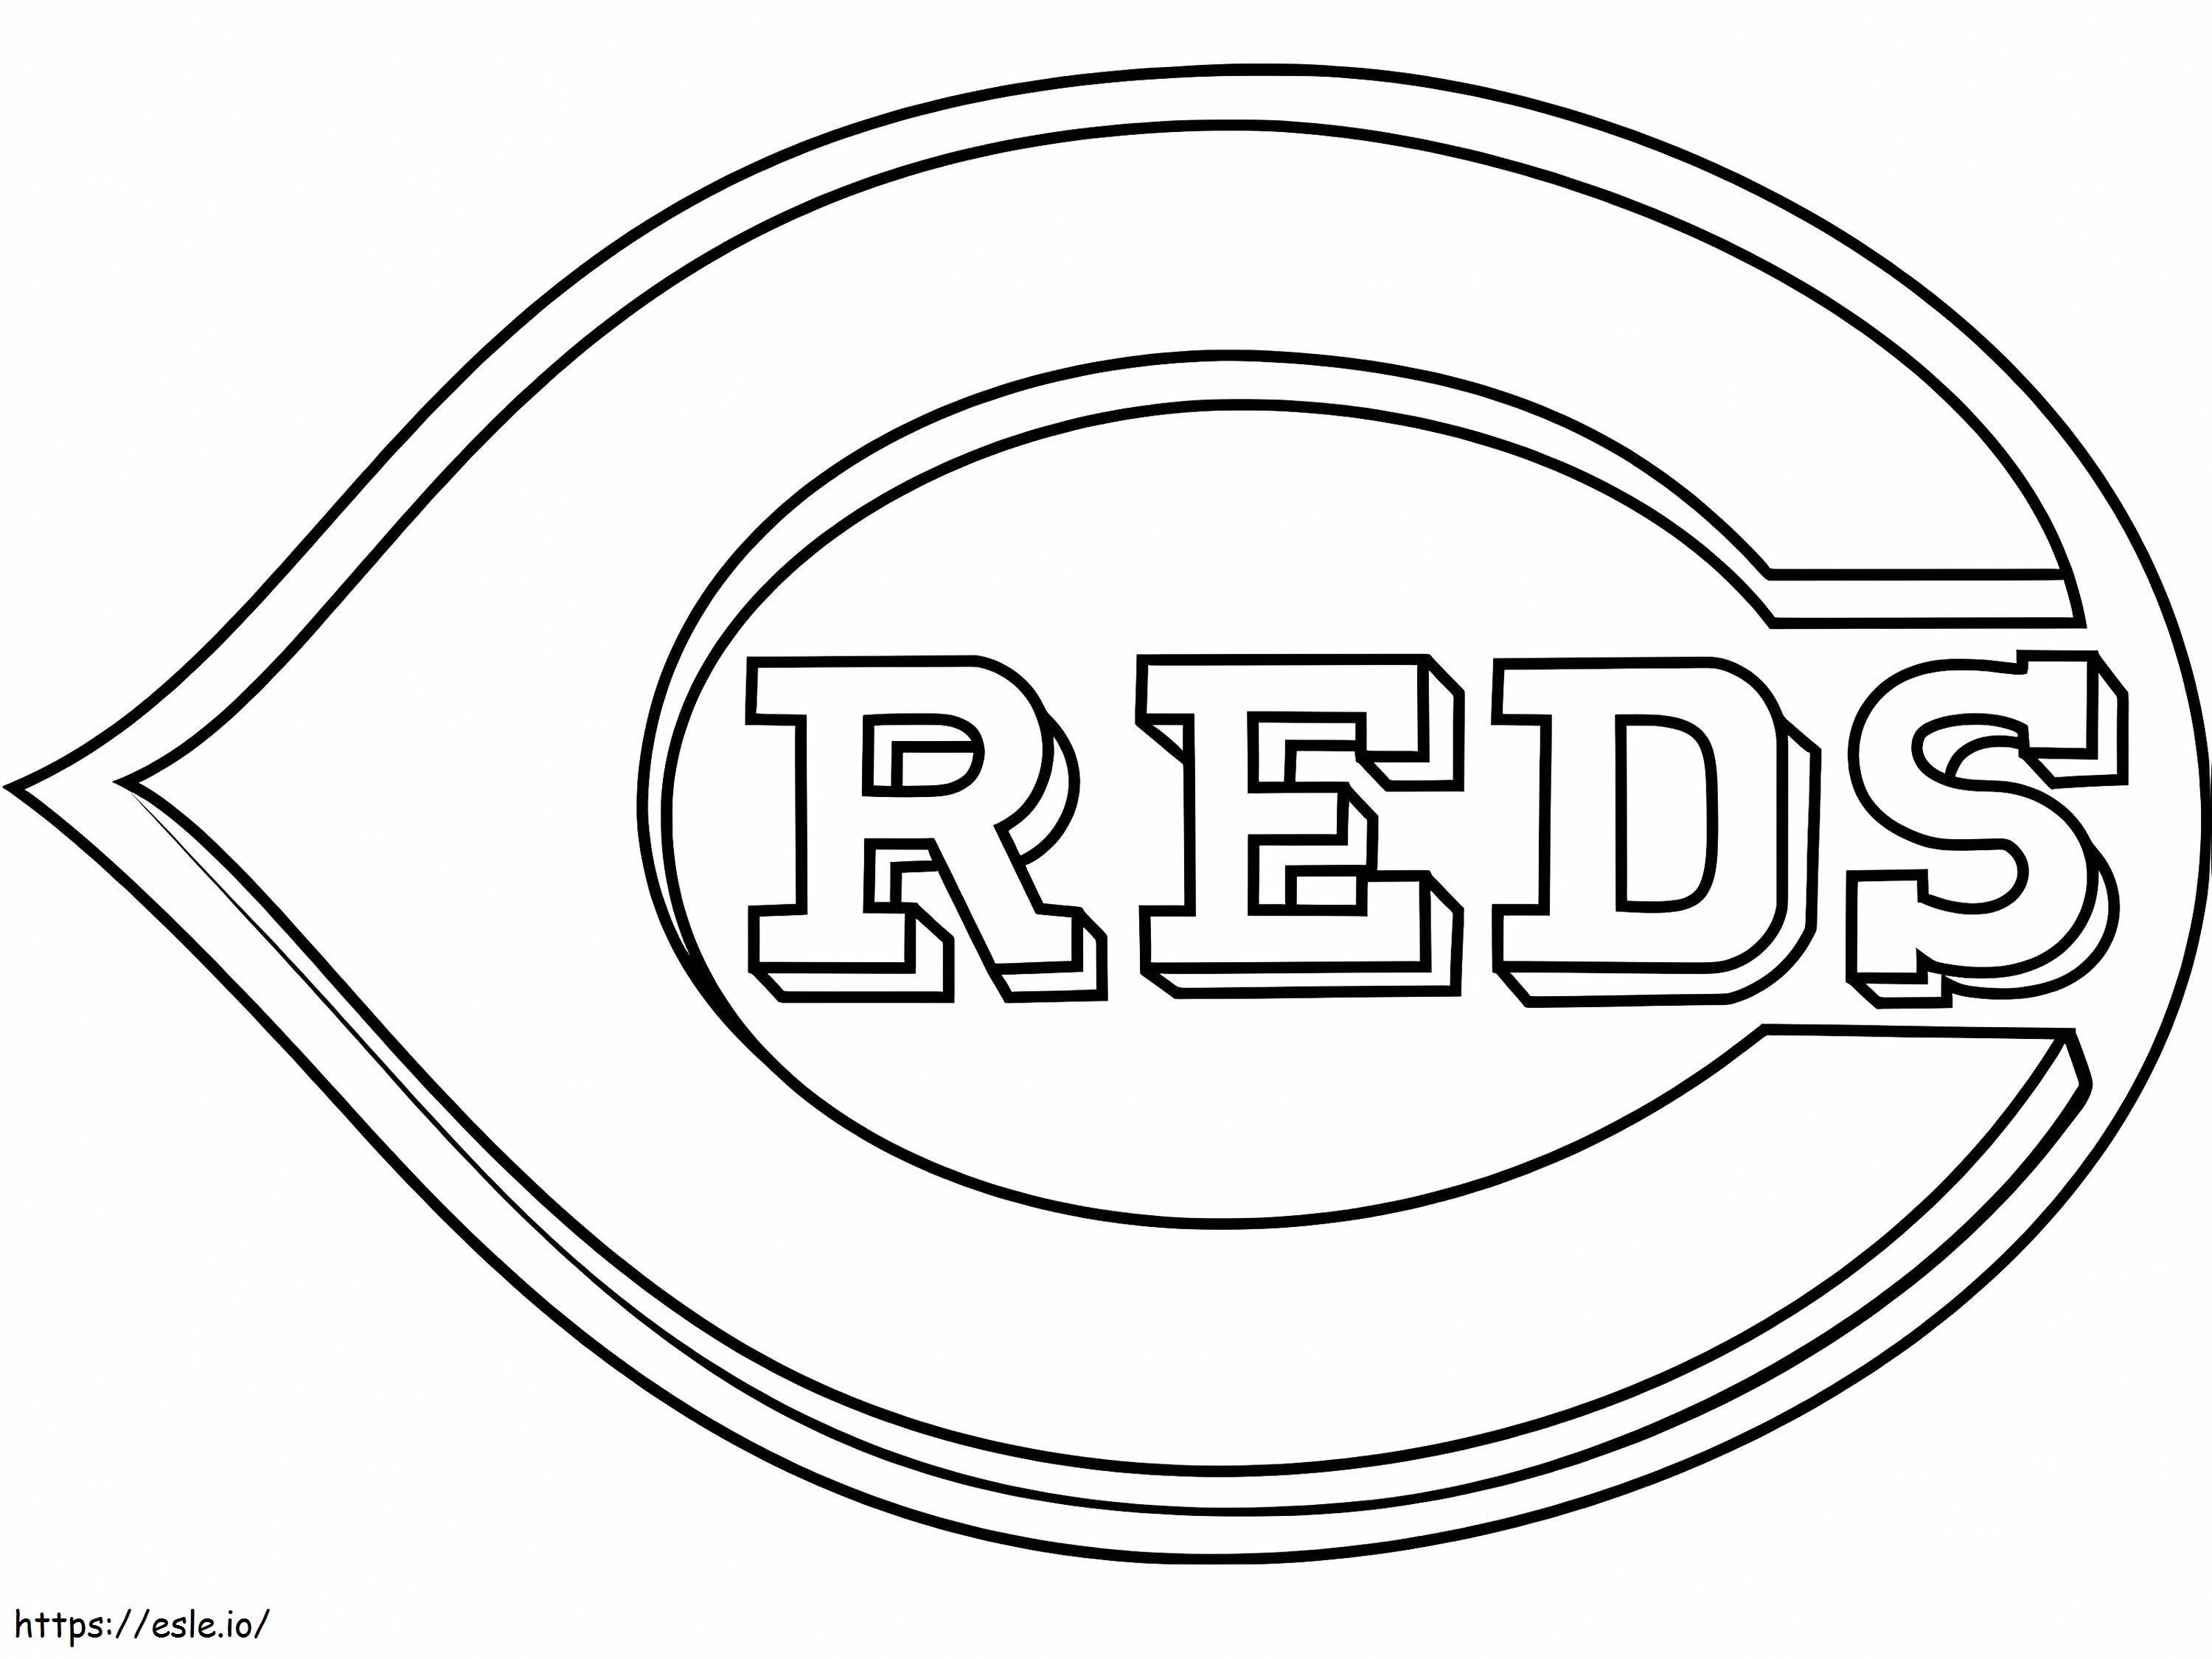 Cincinnati Reds Logo coloring page